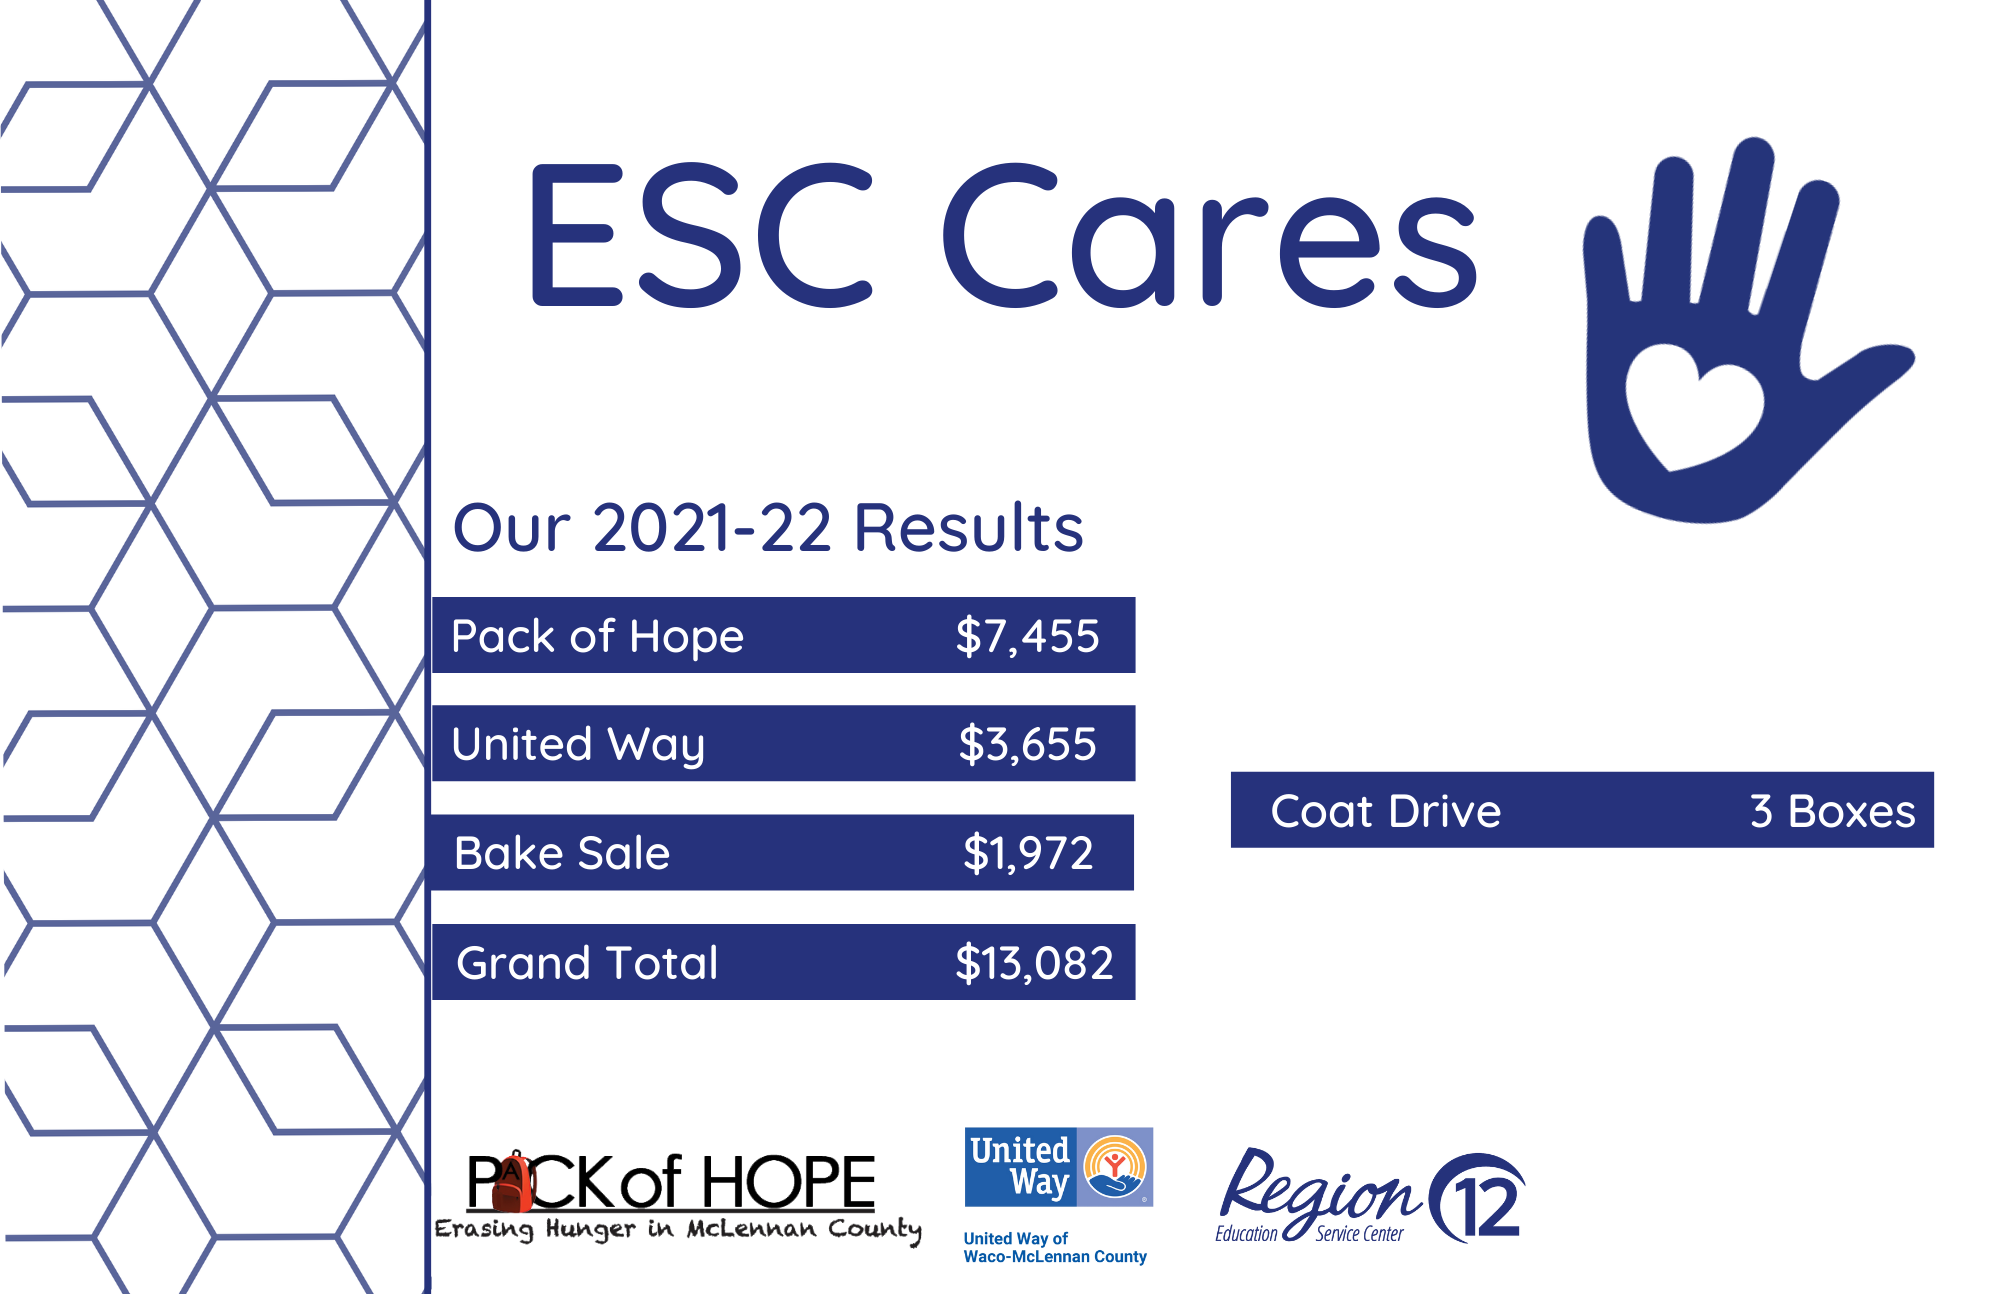 ESC Cares campaign results